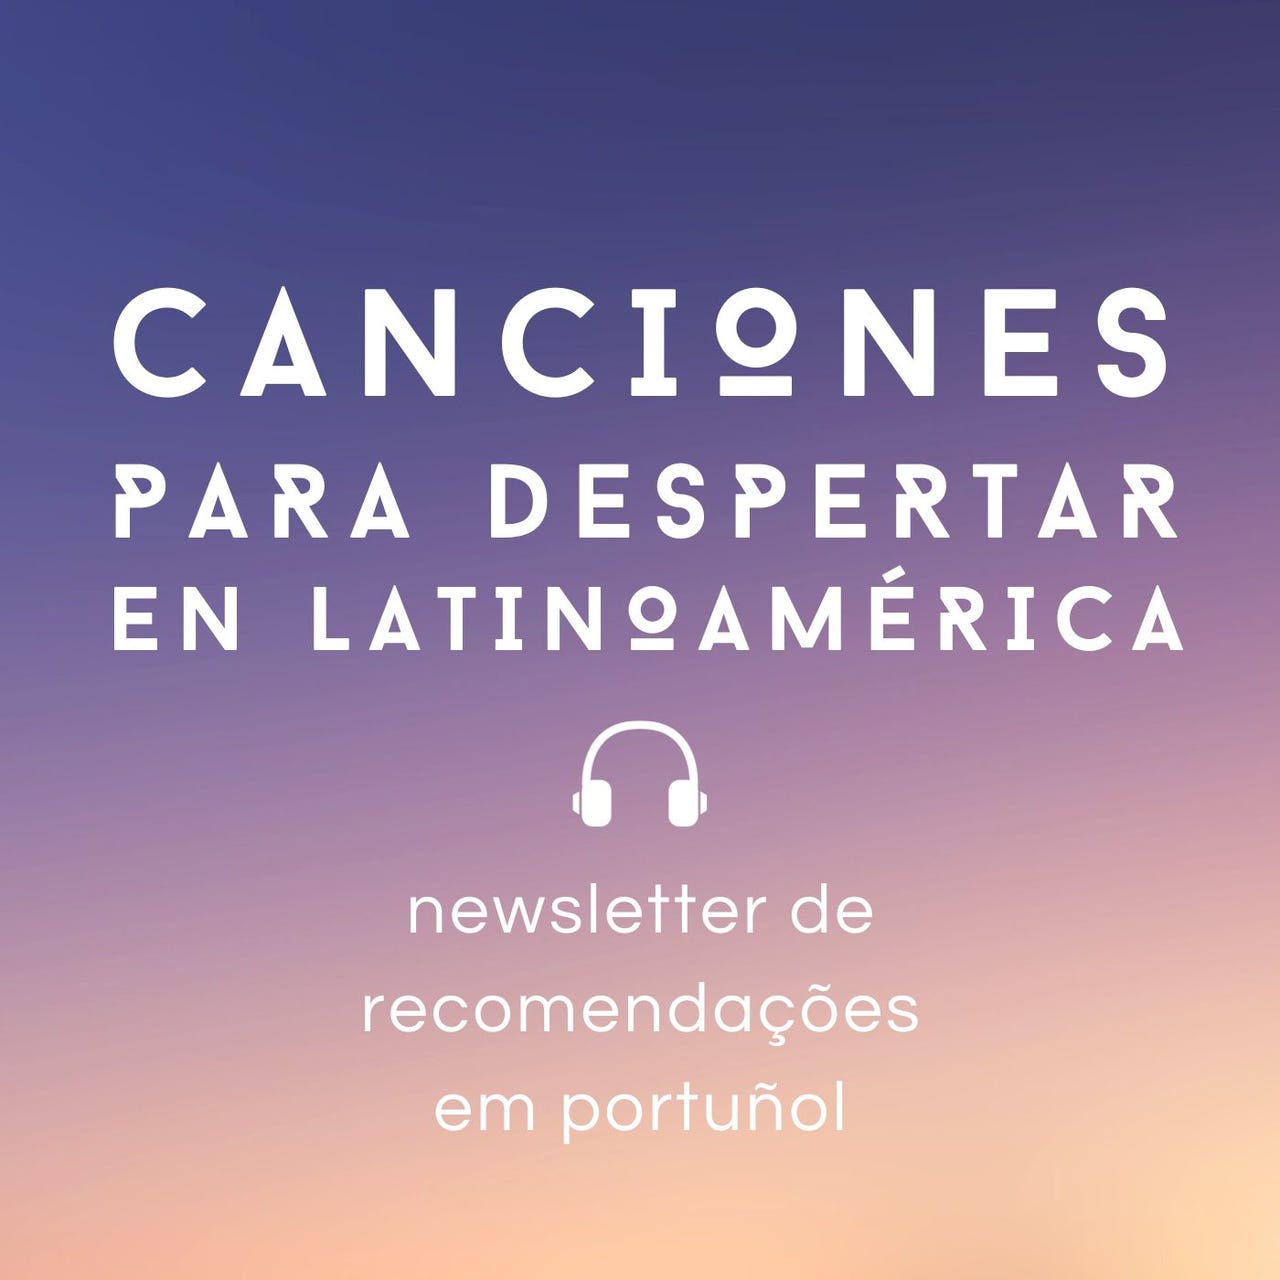 Canciones para despertar en Latinoamérica